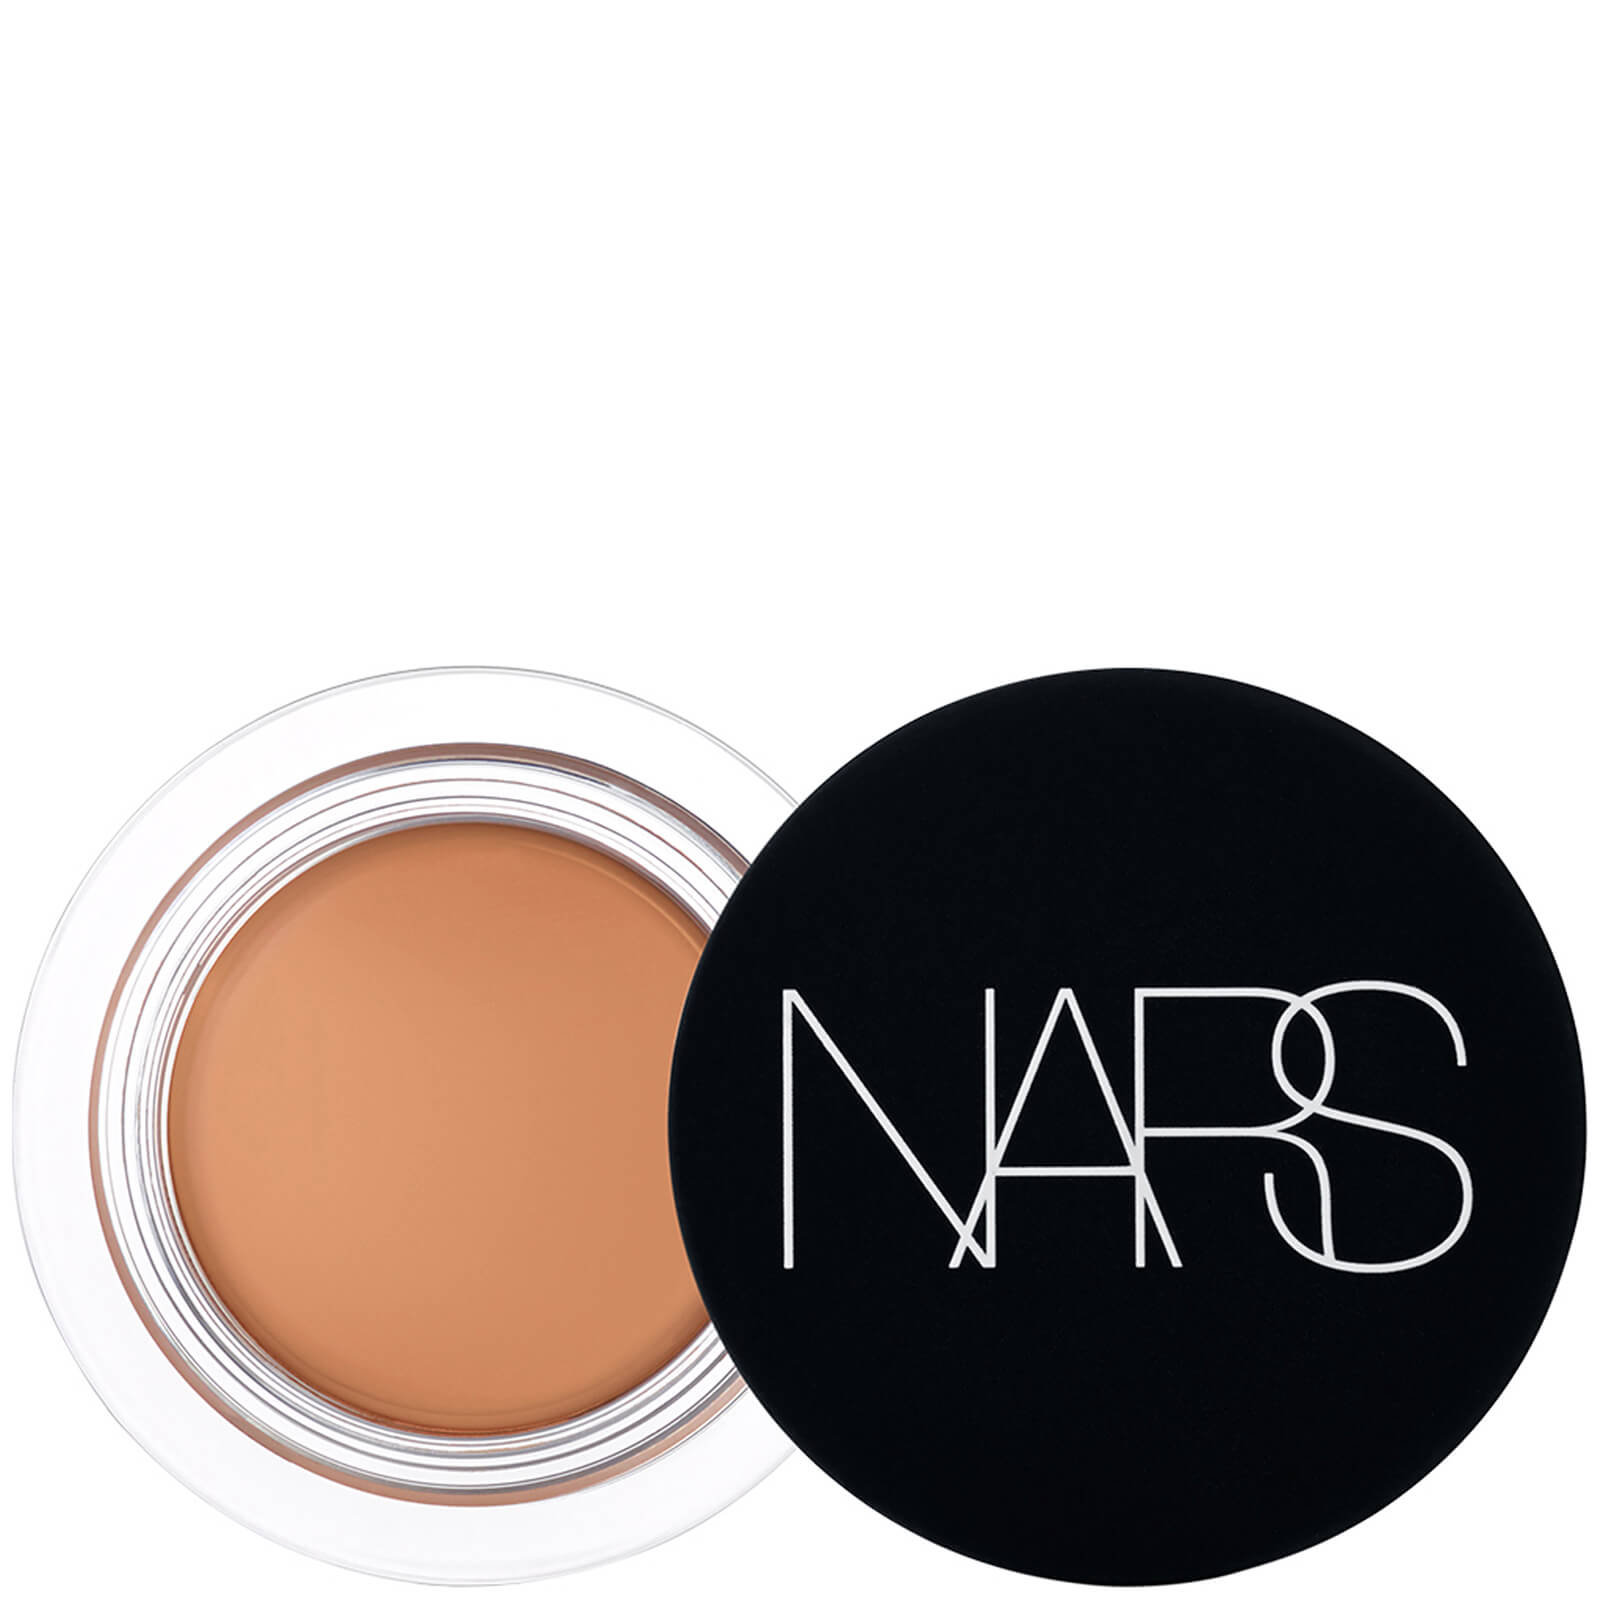 Nars Soft Matte Complete Concealer 6.2g (various Shades) - Chestnut